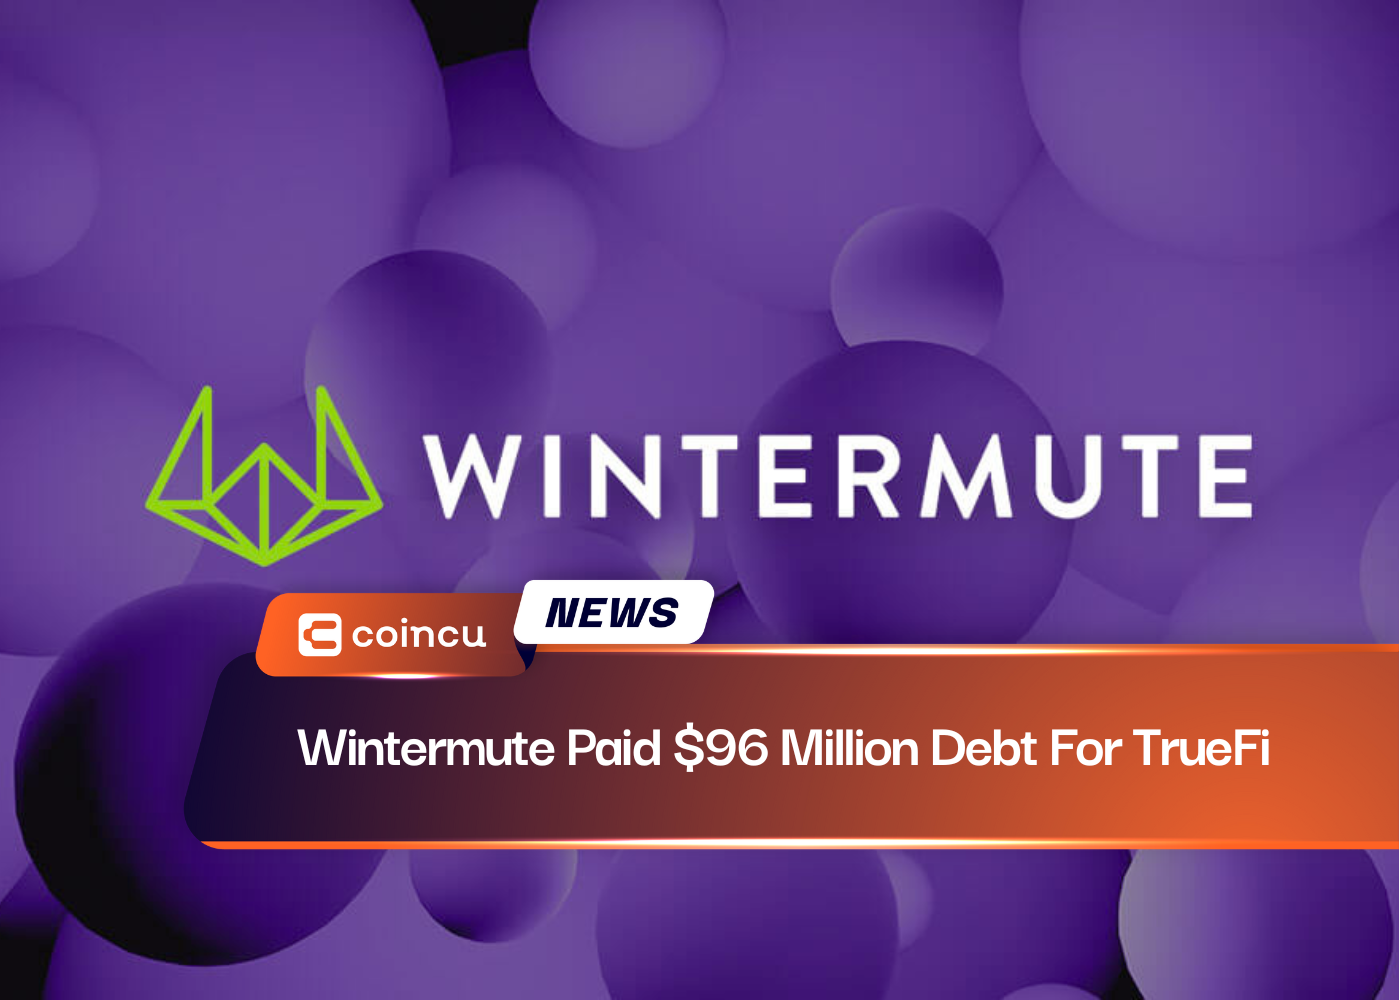 Wintermute pagó una deuda de 96 millones de dólares por TrueFi